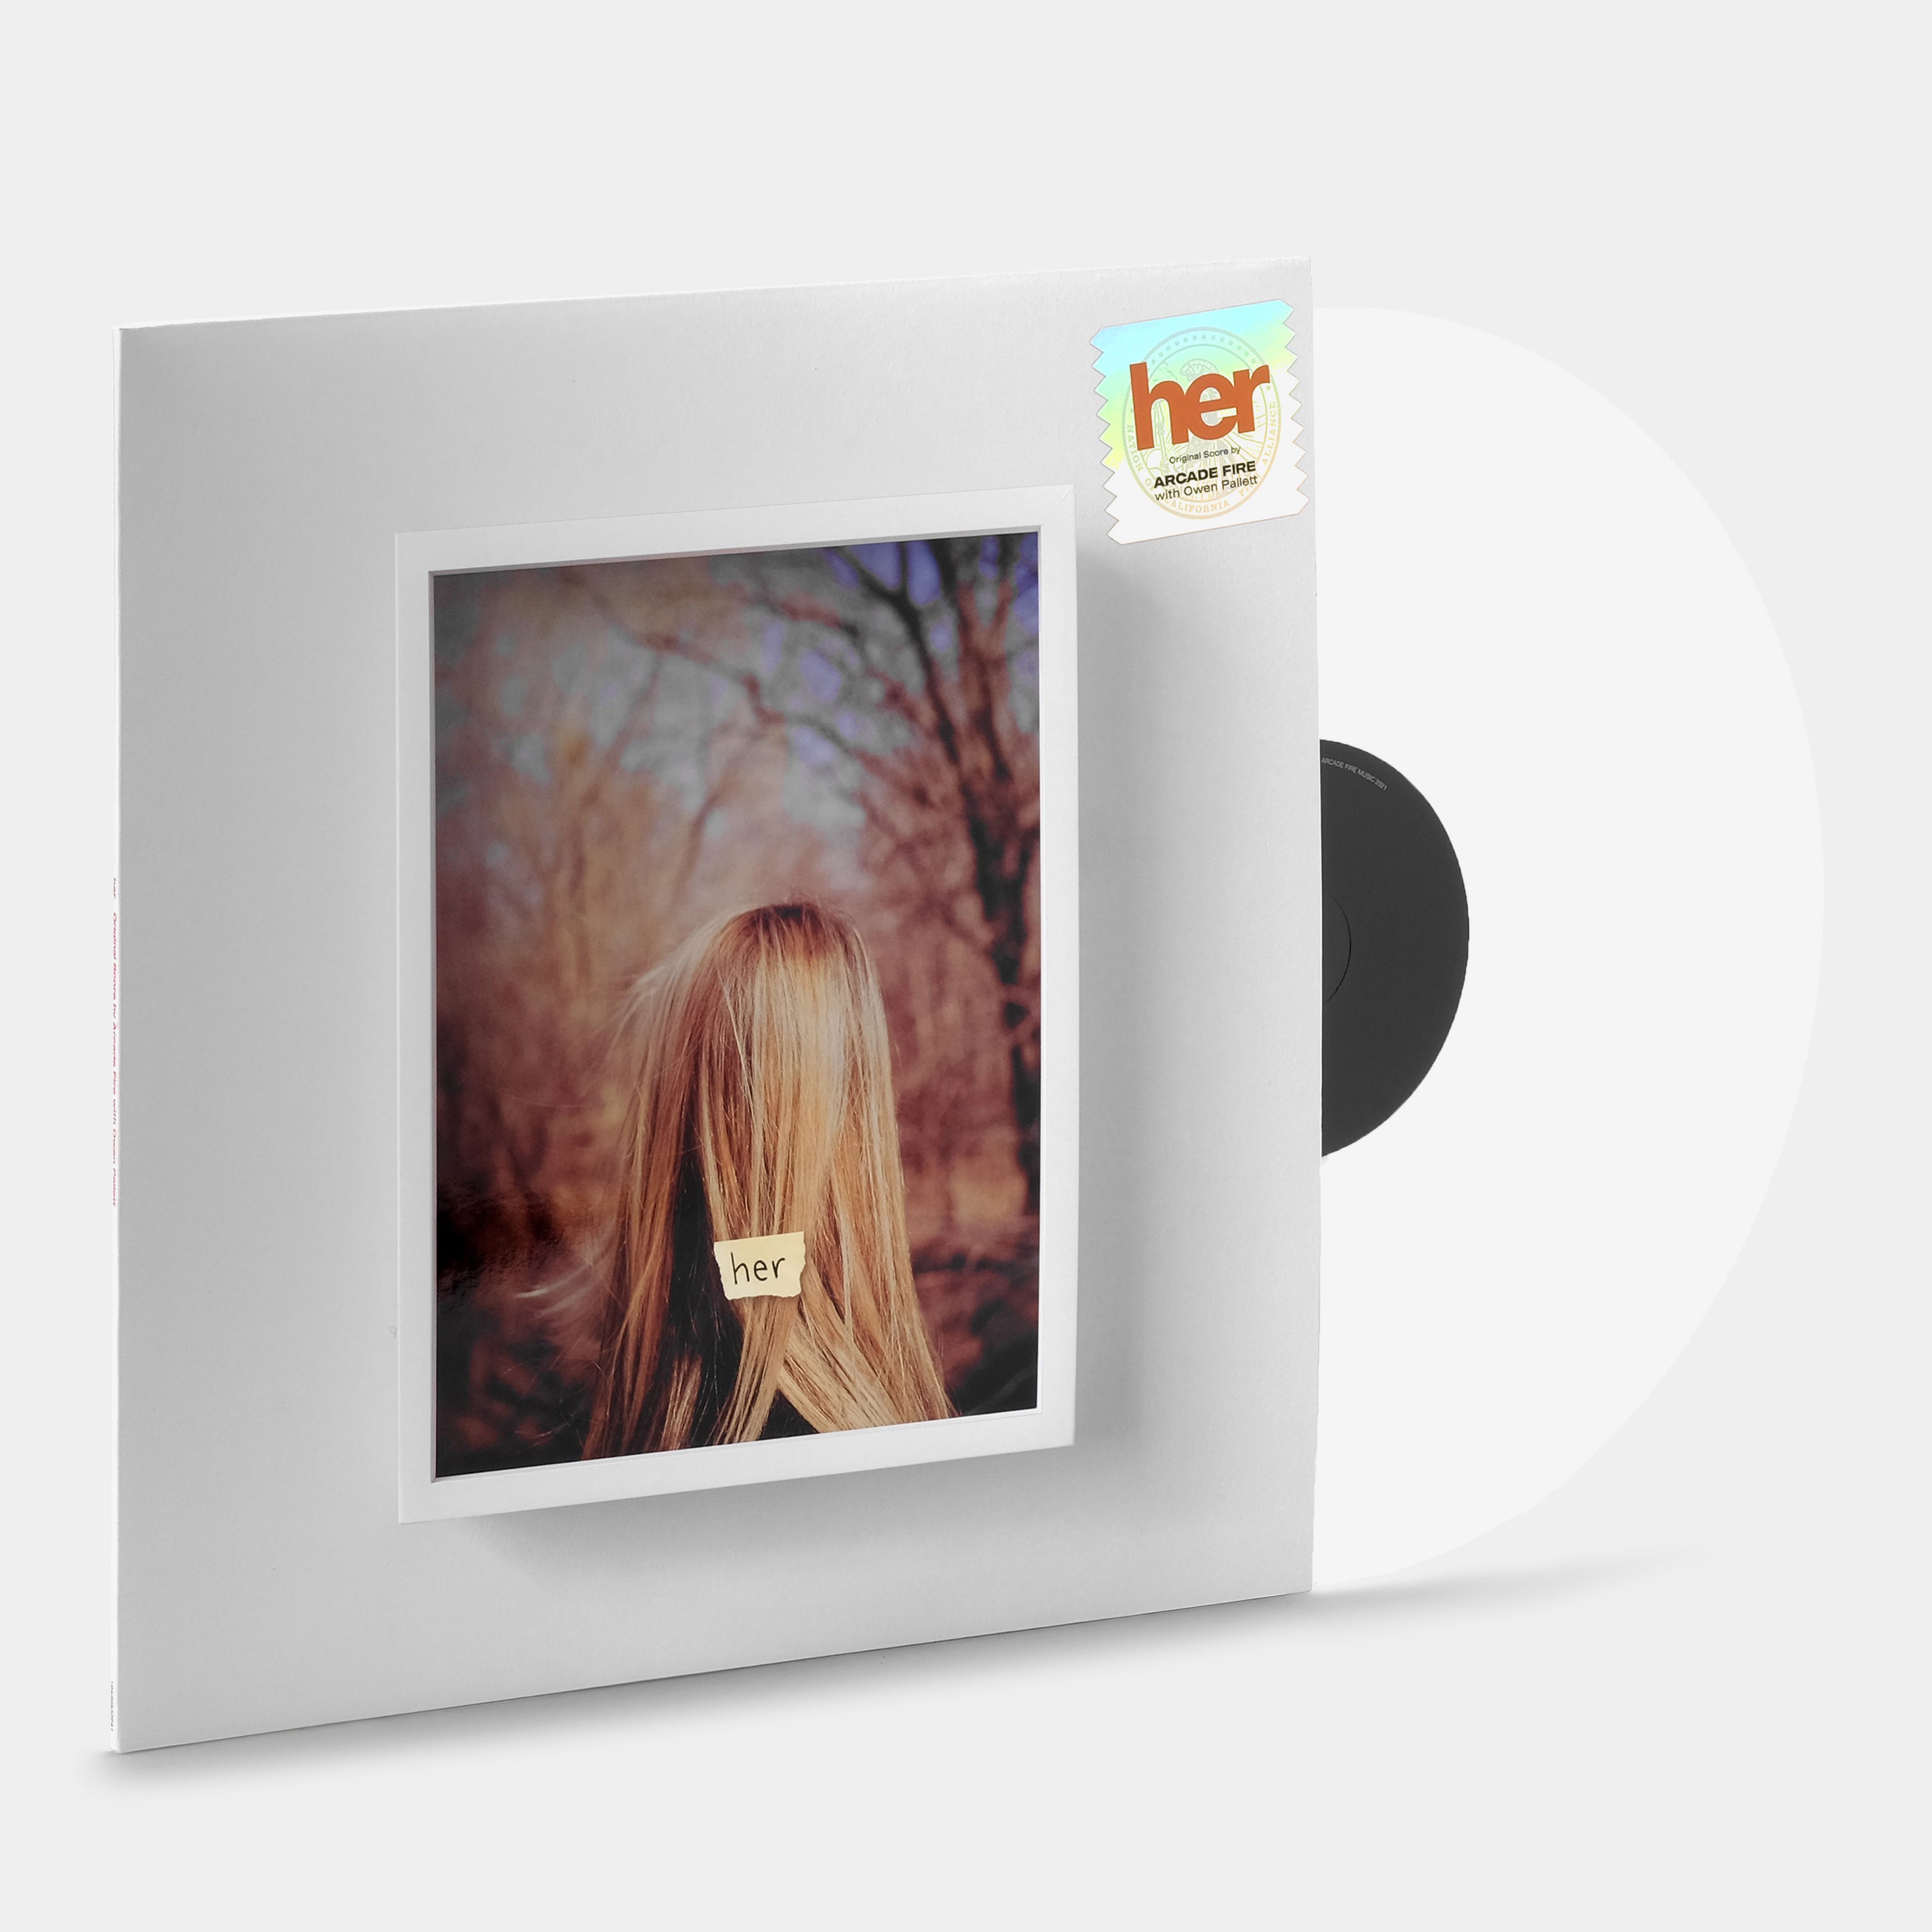 Arcade Fire & Owen Pallet - Her (Original Score) LP White Vinyl Record